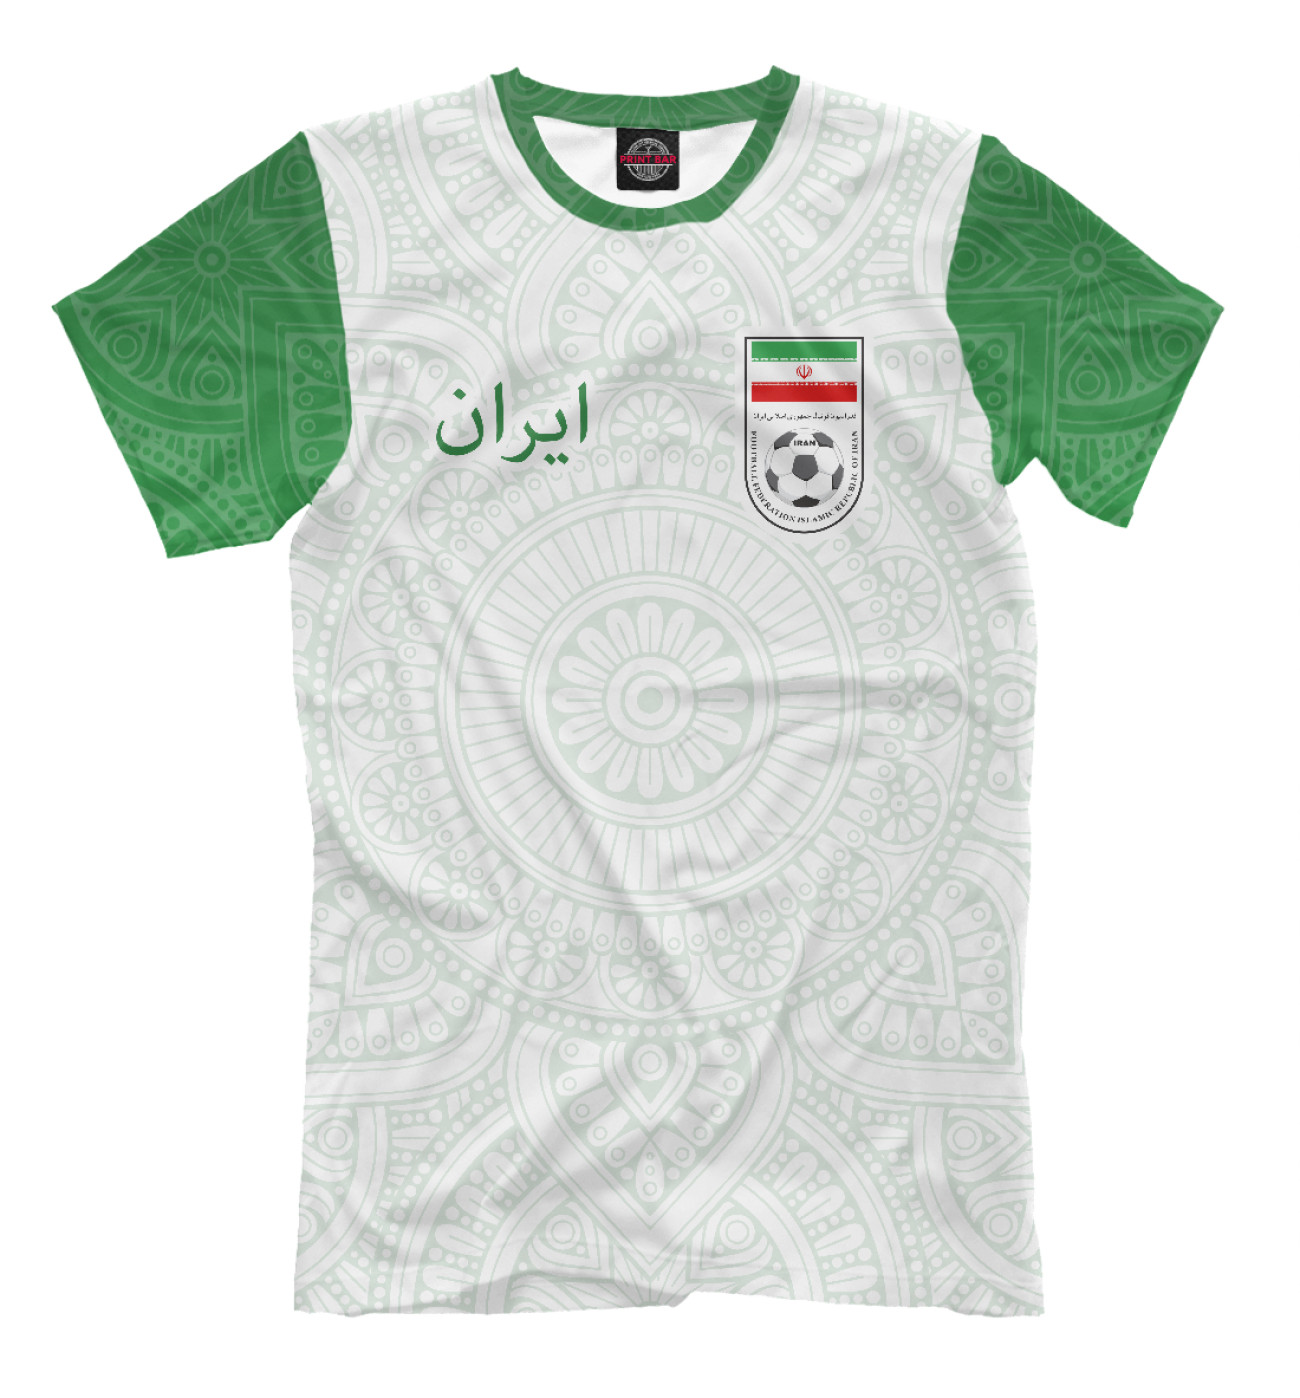 Мужская Футболка Иран, артикул: FNS-824659-fut-2